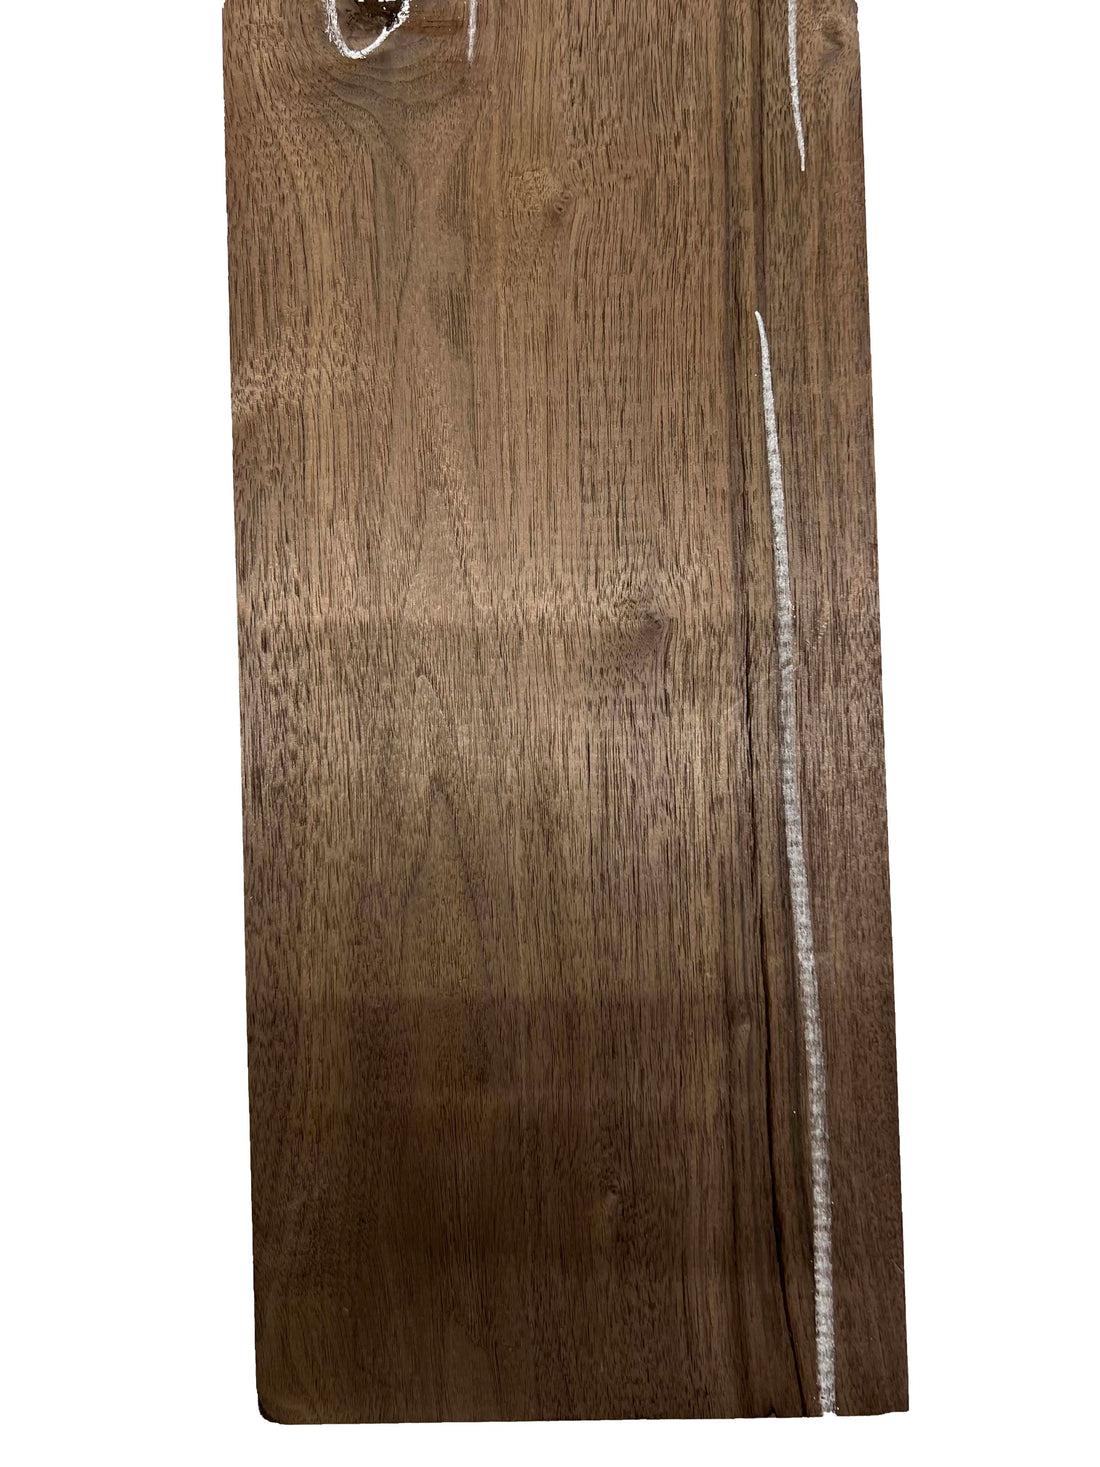 Black Walnut Lumber Board Wood Blank 22&quot;x6-5/8&quot;x2&quot; 